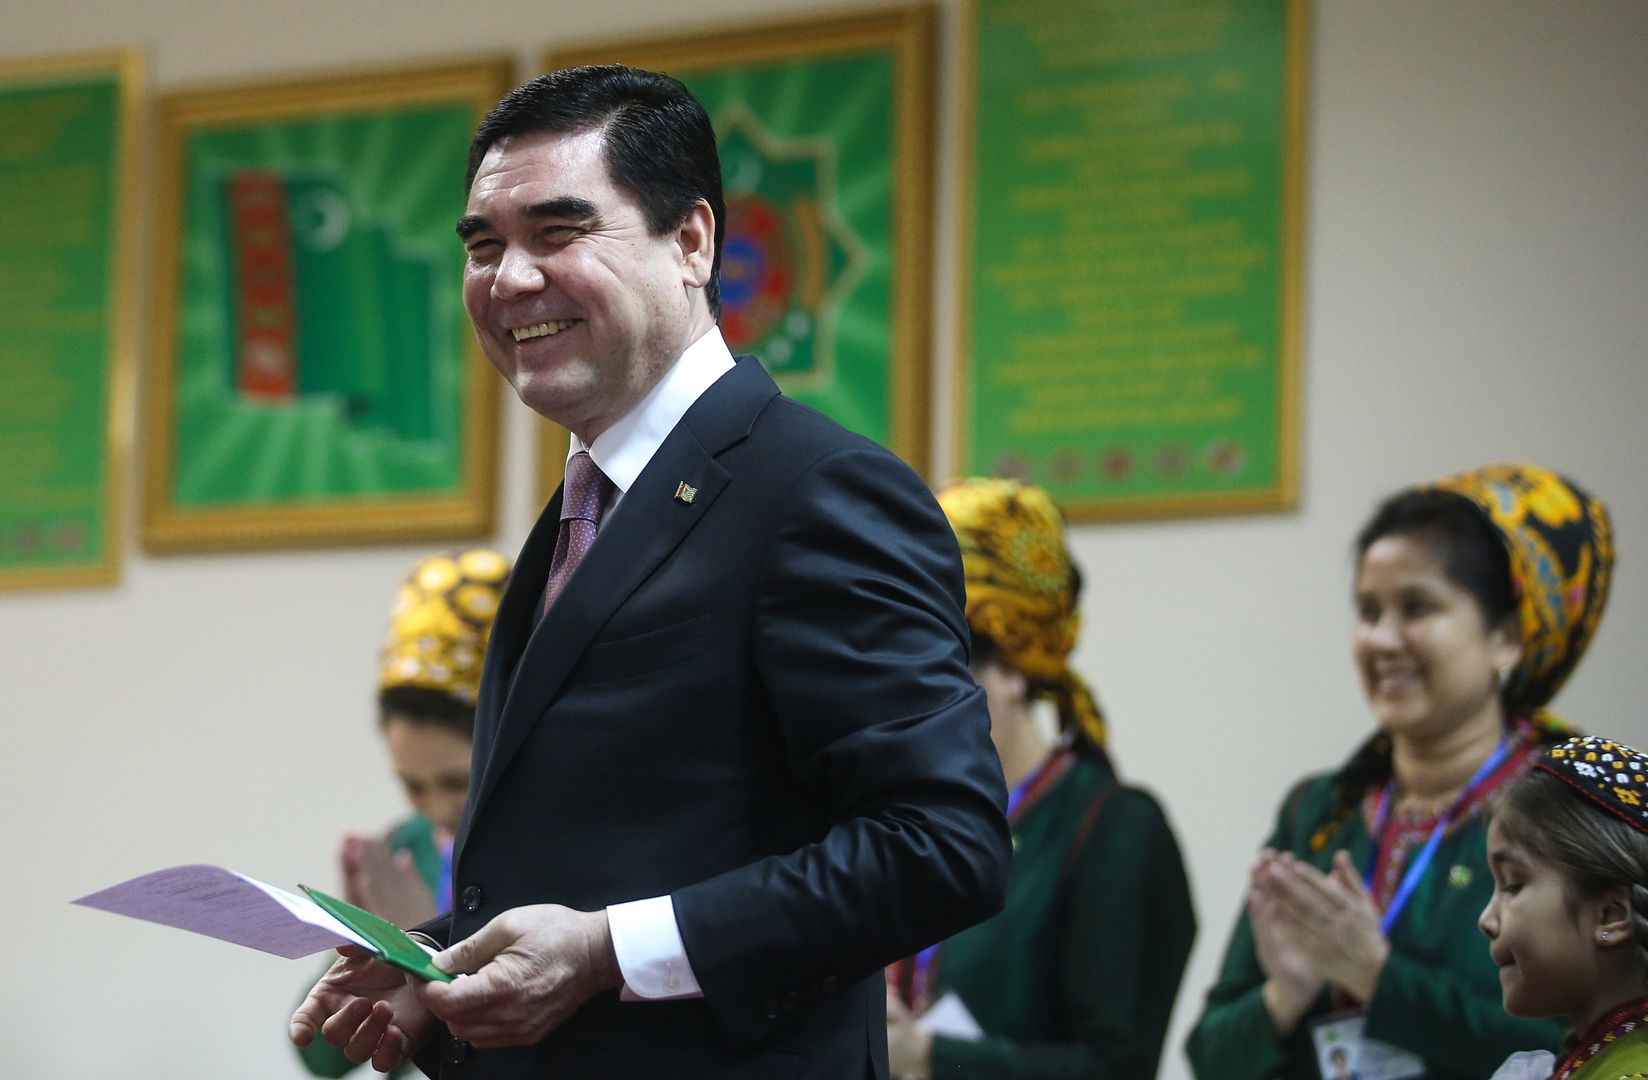 Sposób na walkę z koronawirusem. Władze Turkmenistanu znalazły szokujące rozwiązanie